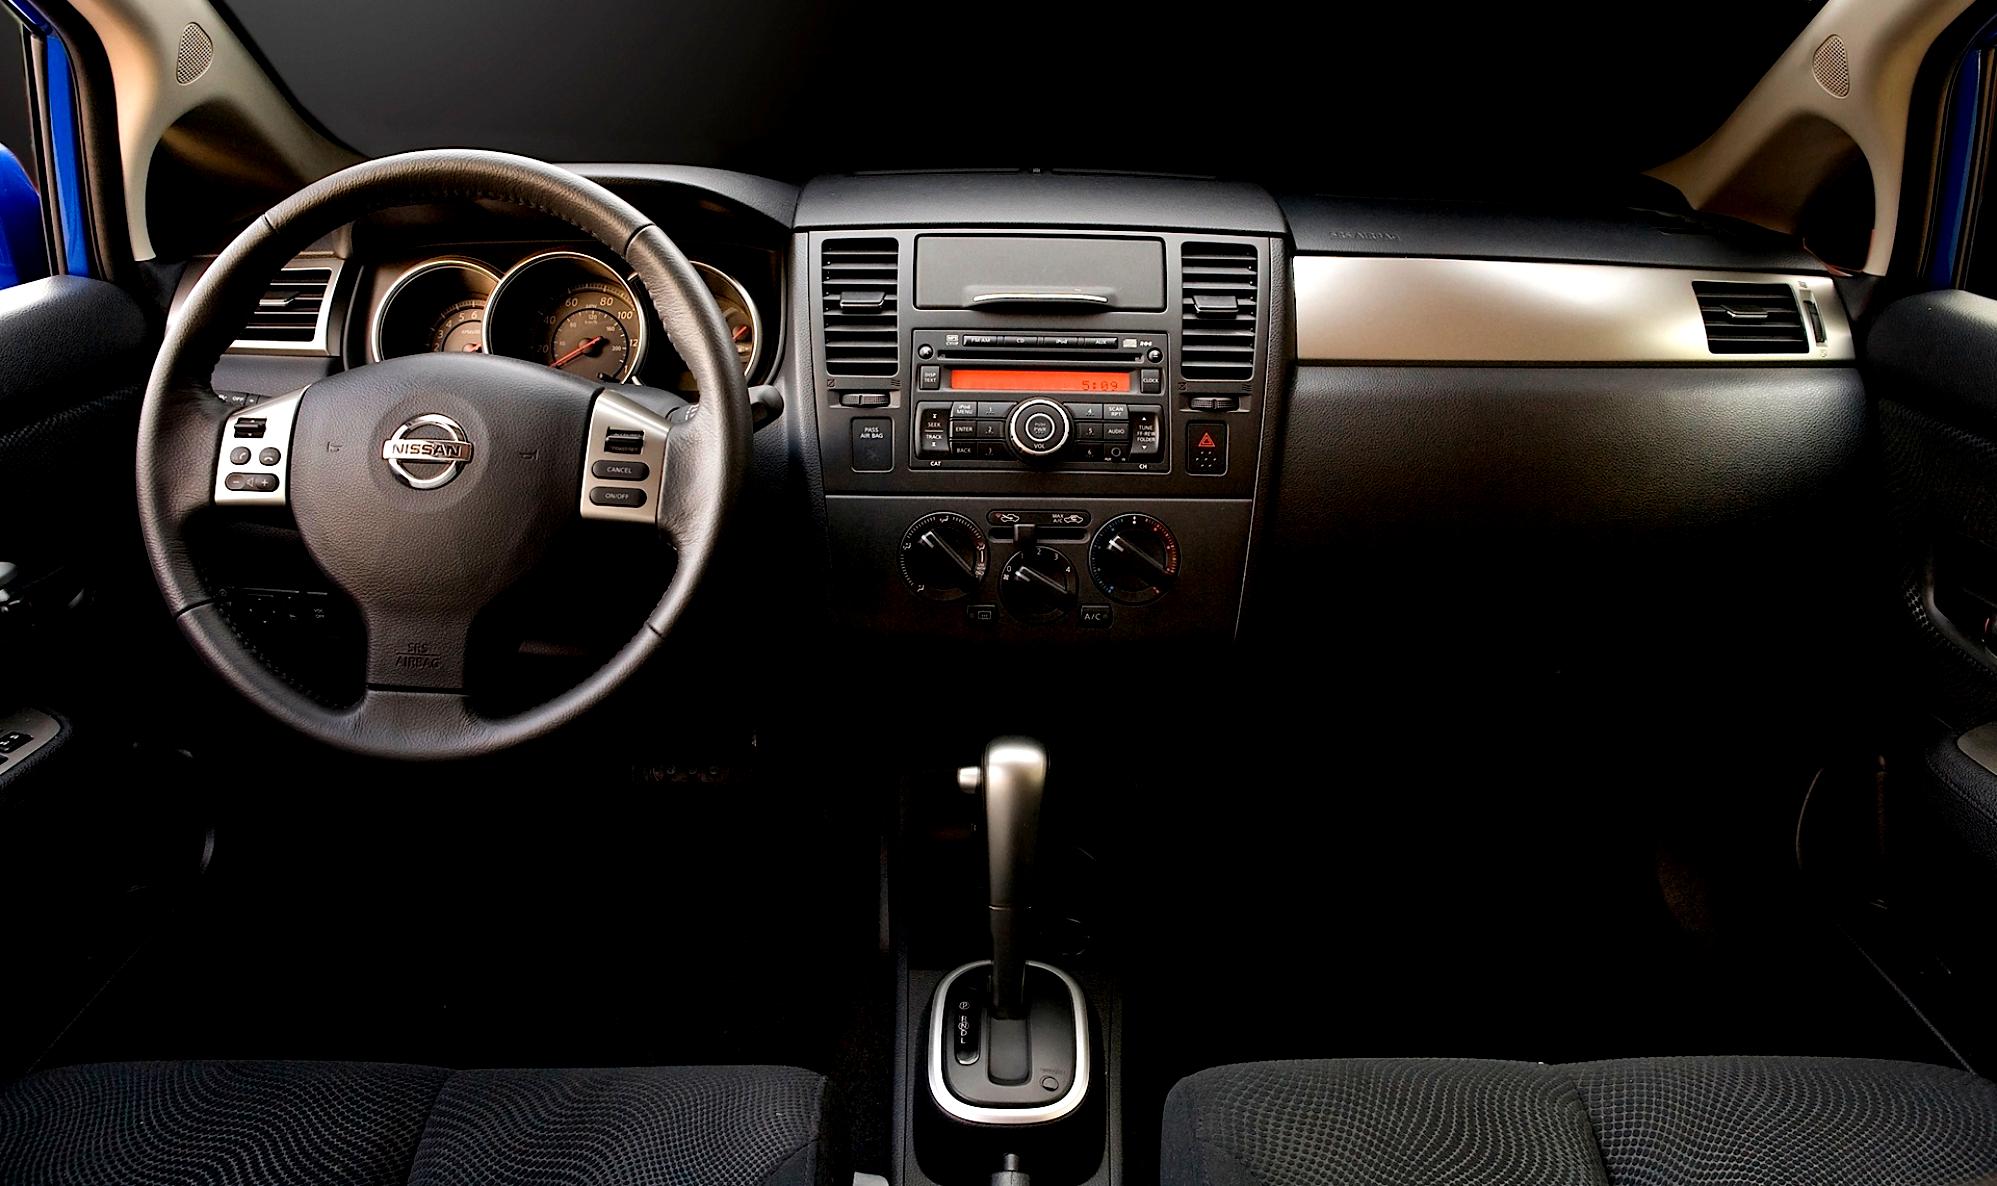 Nissan Tiida/Versa Sedan 2011 #24